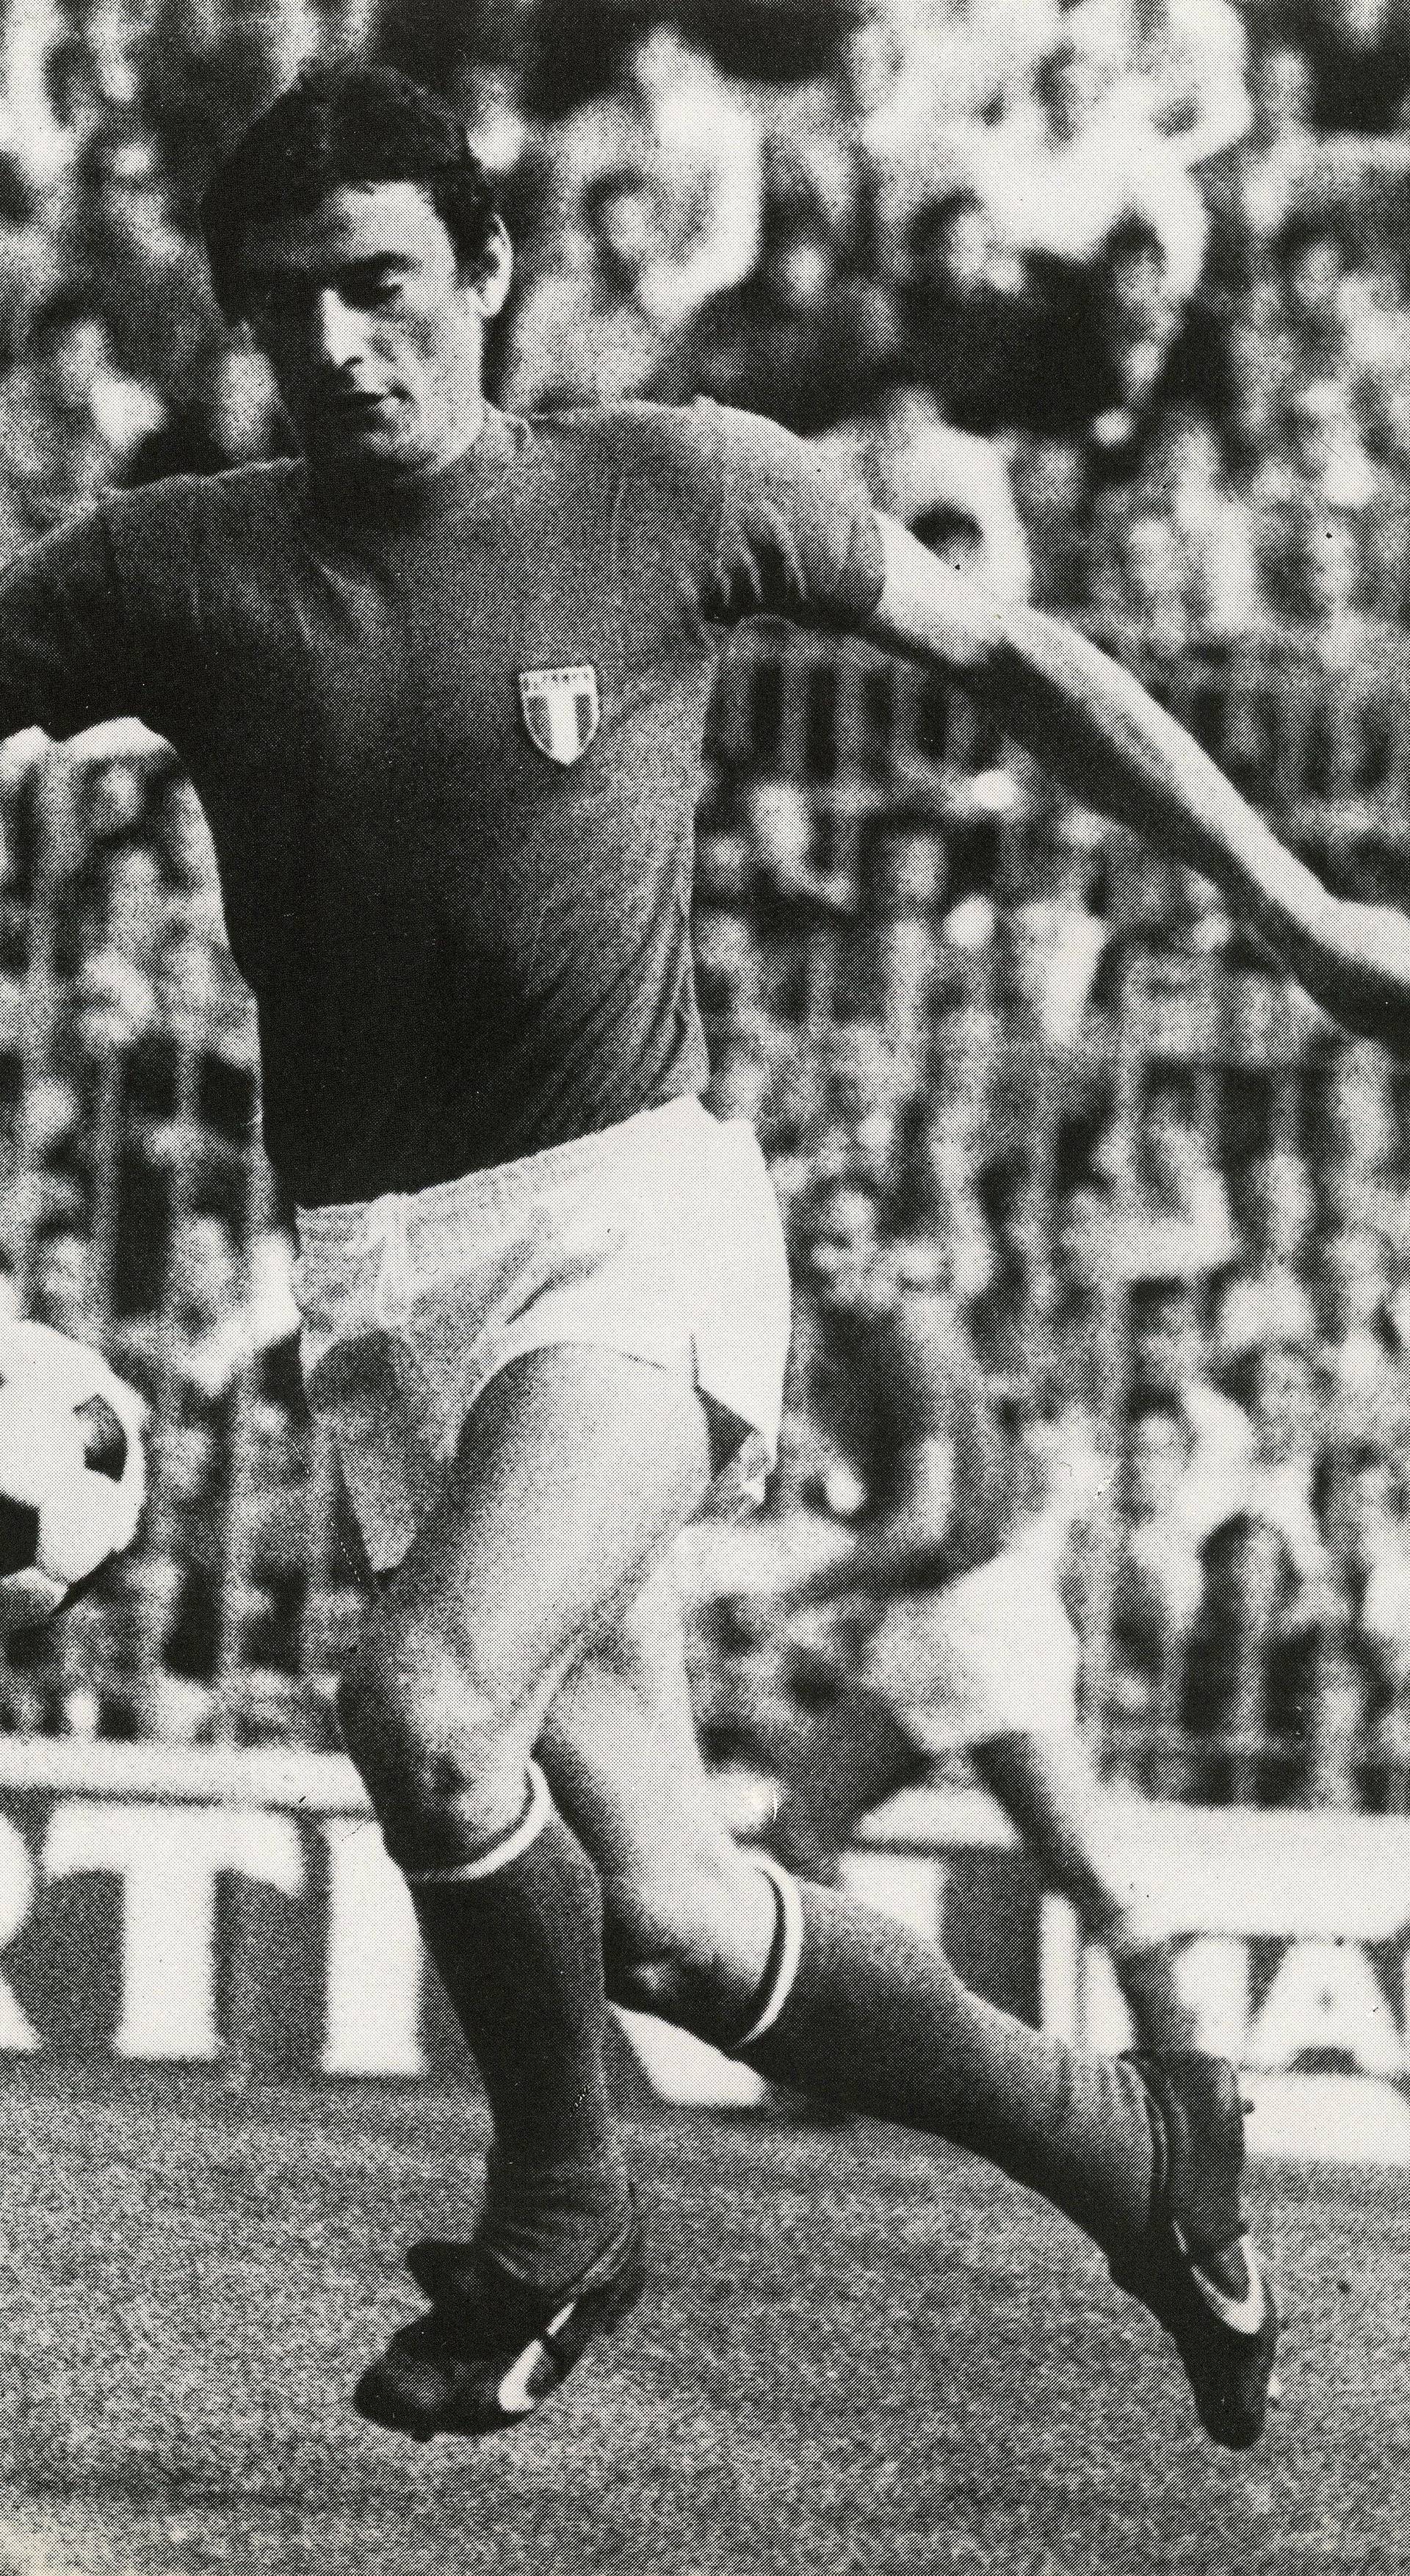 Italian football player Gigi Riva, Italy 1970